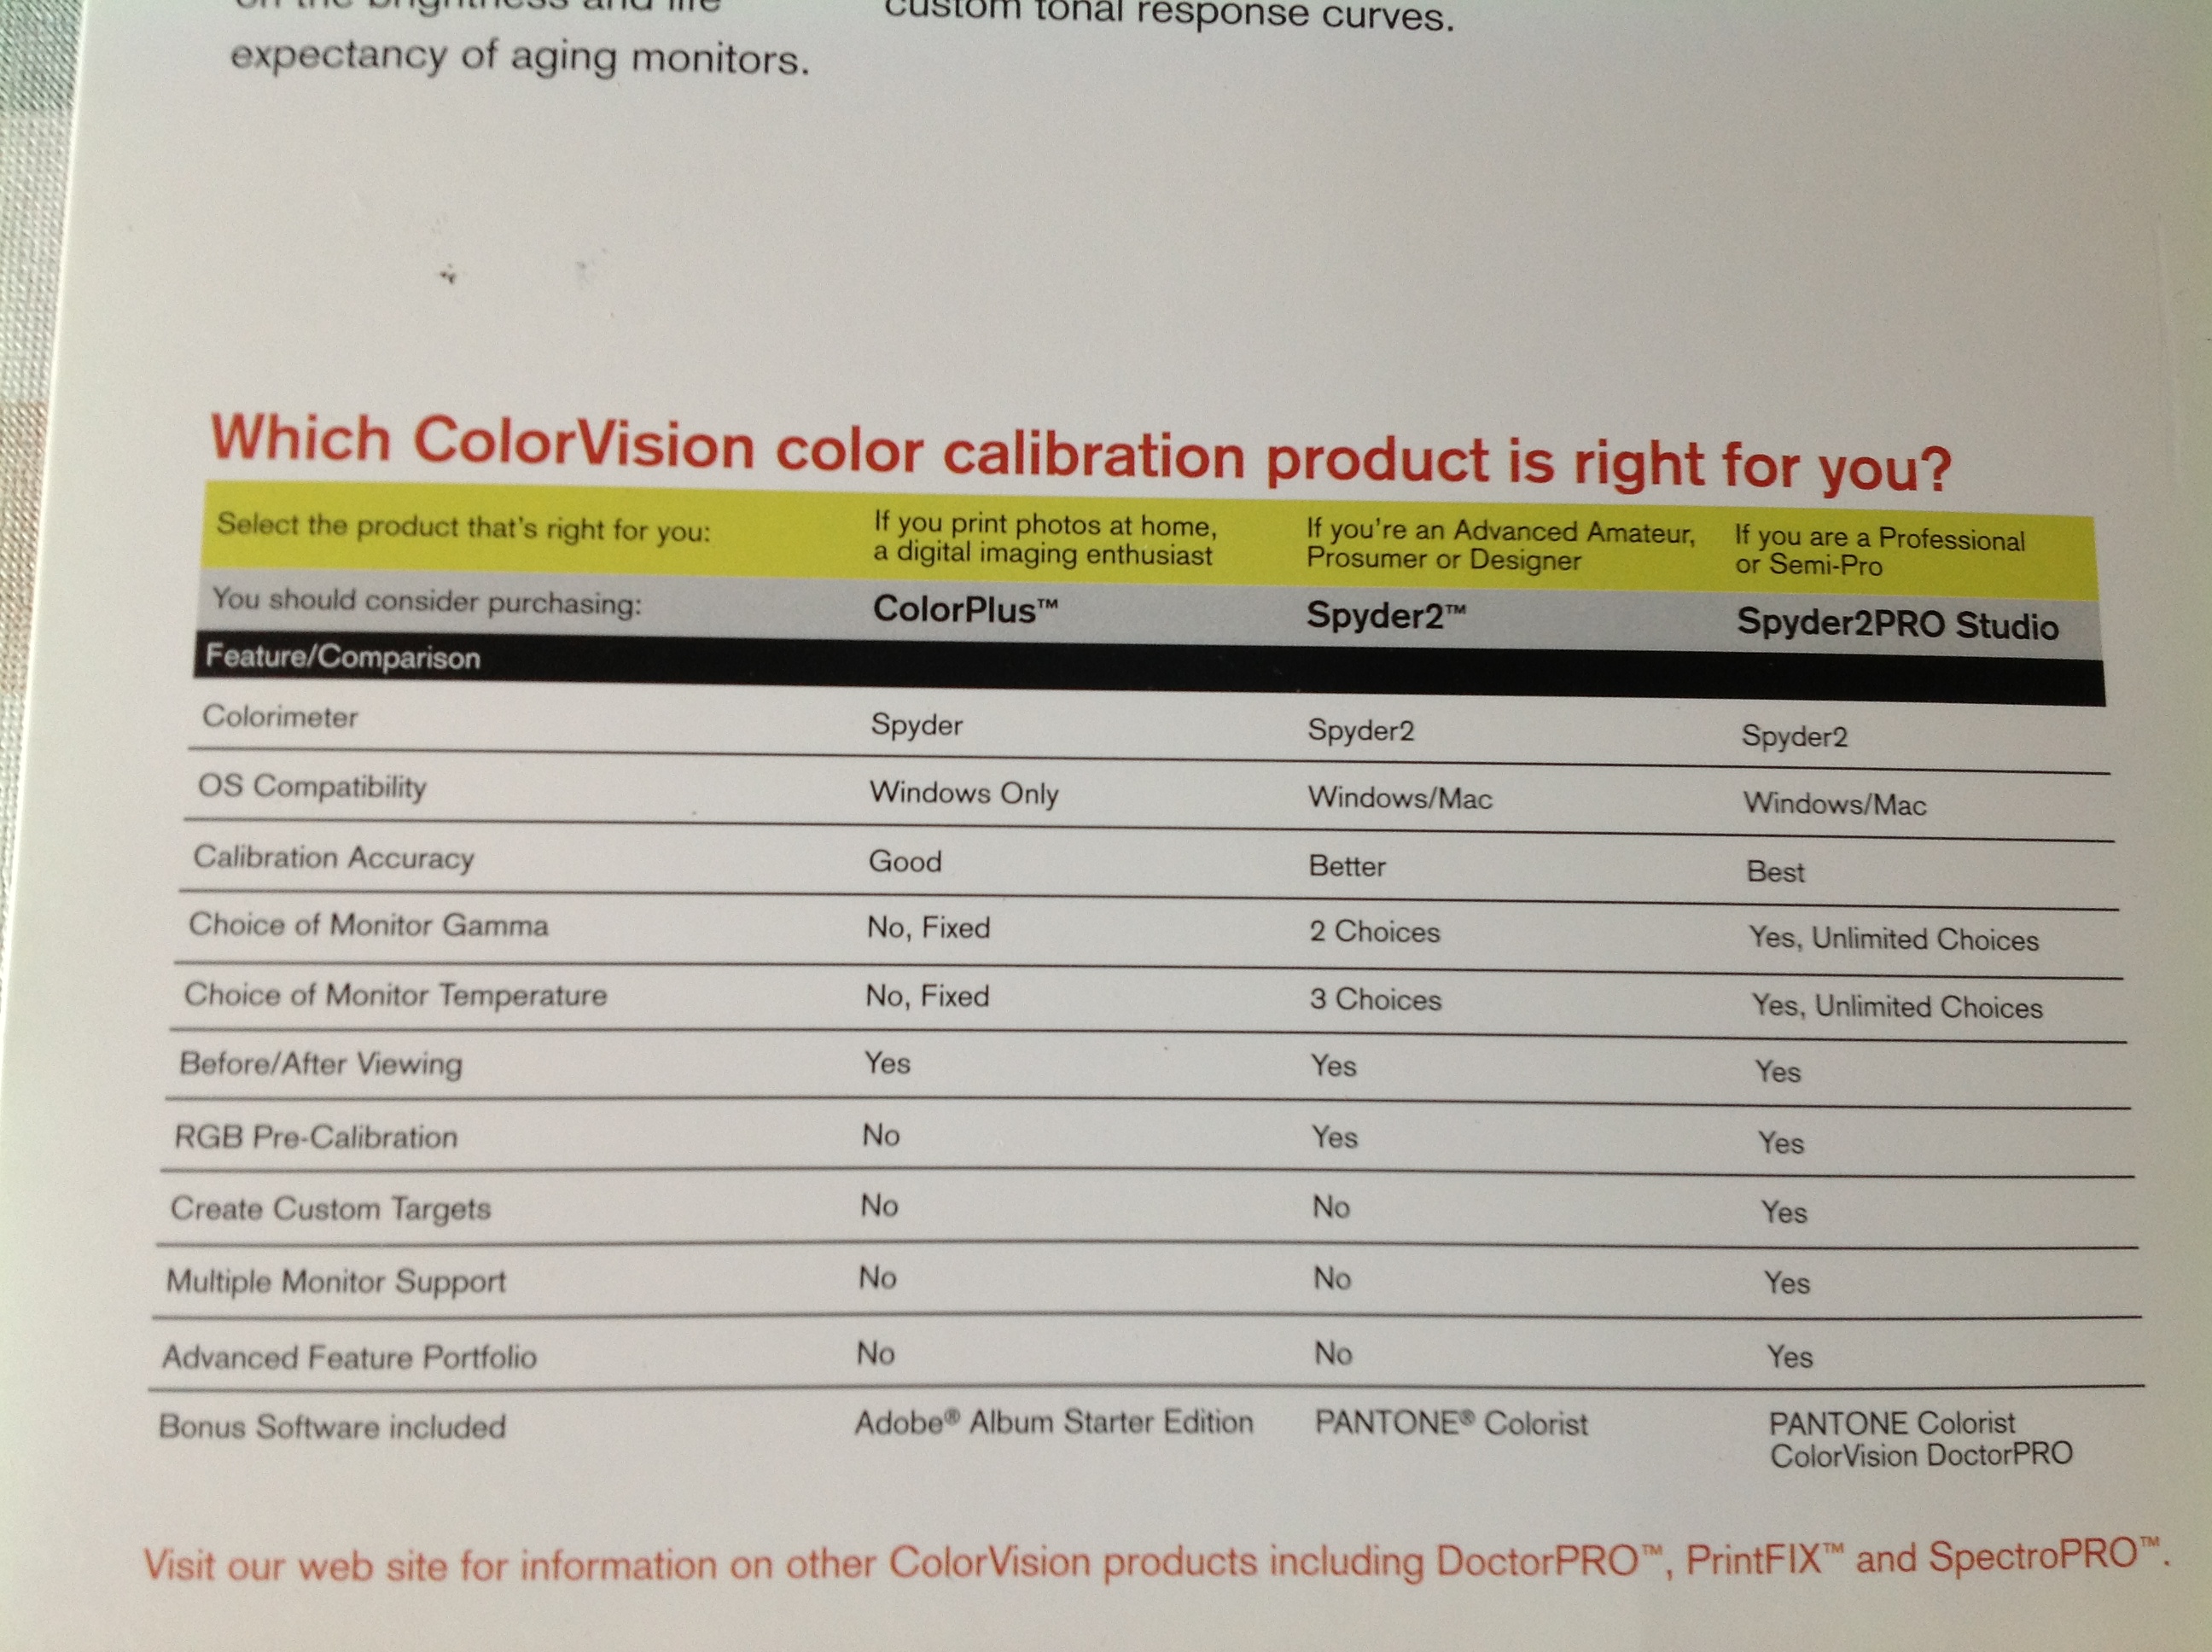 Color Vision Spyder 2 Pro Studio